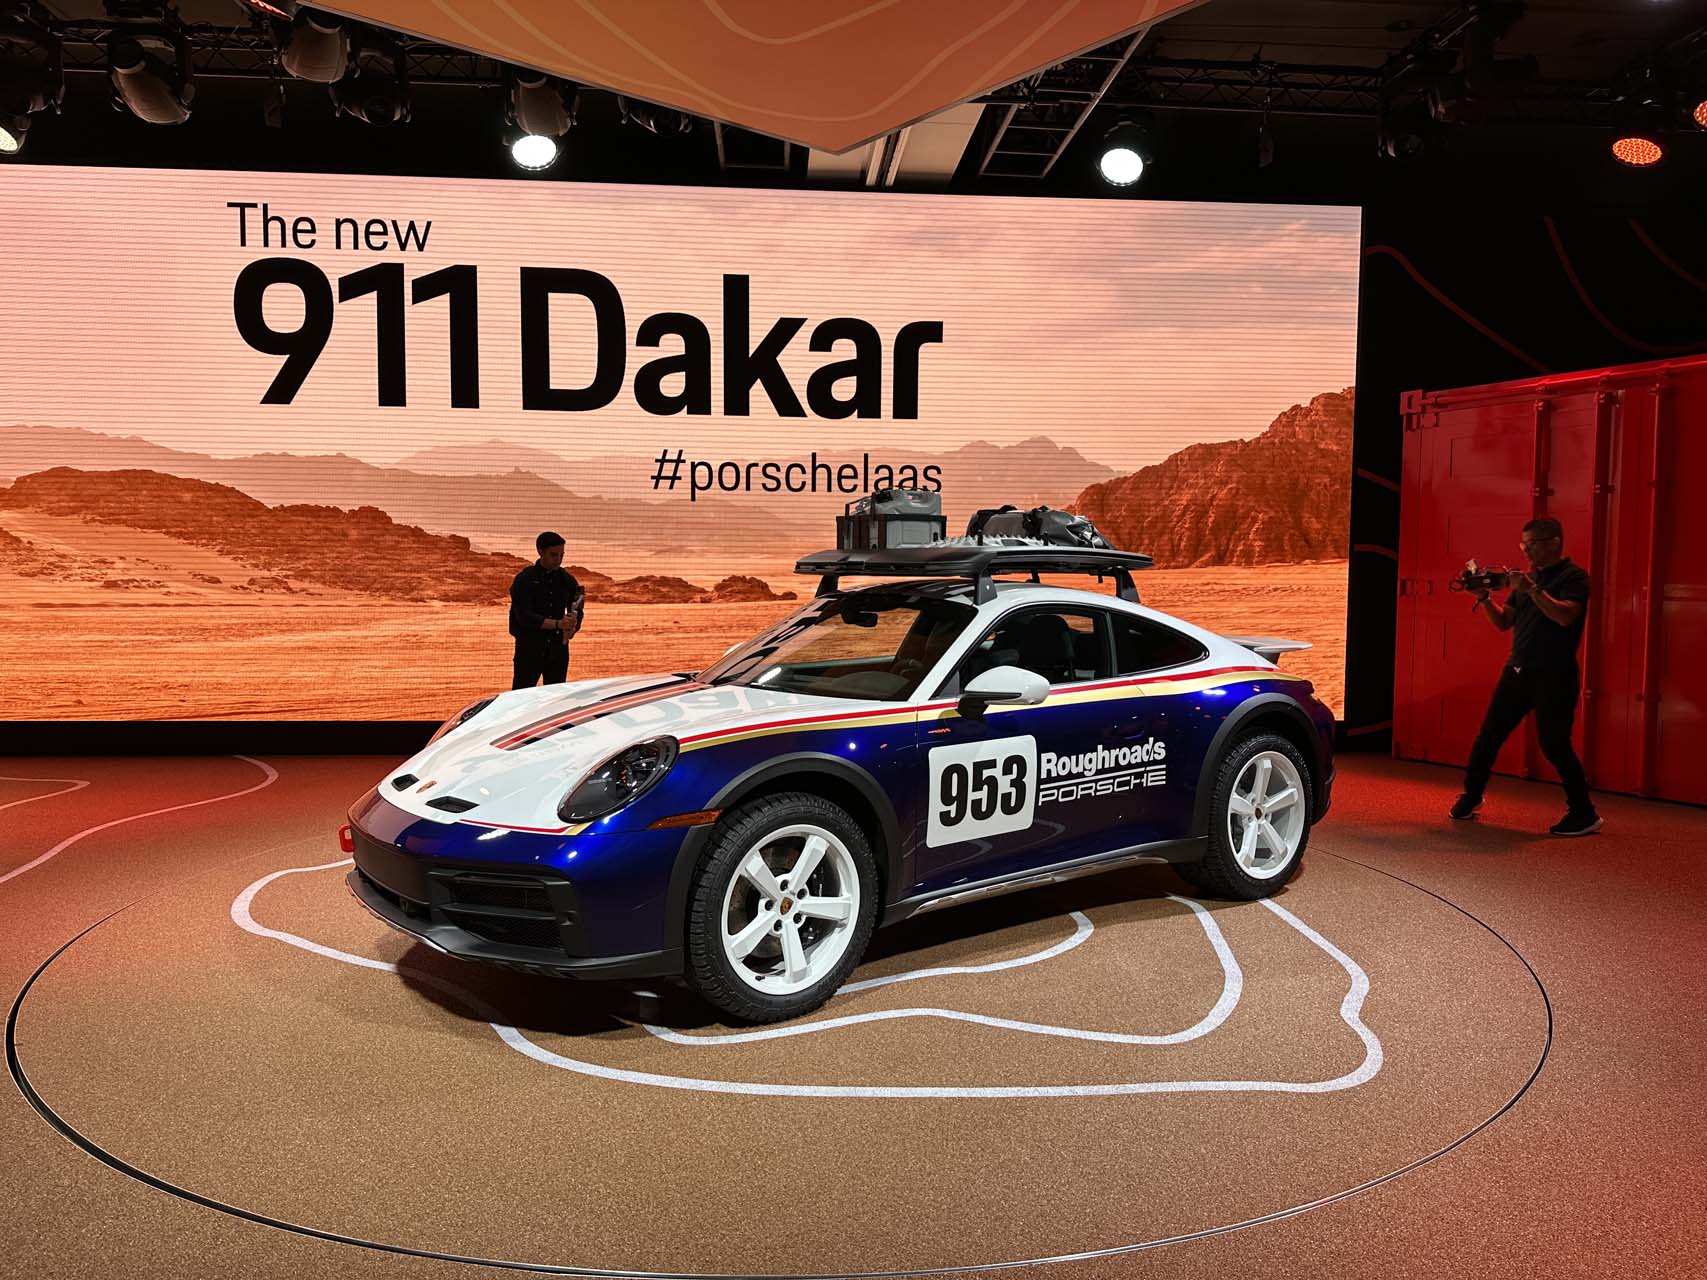 The Porsche 911 Dakar was to become the 911 Safari